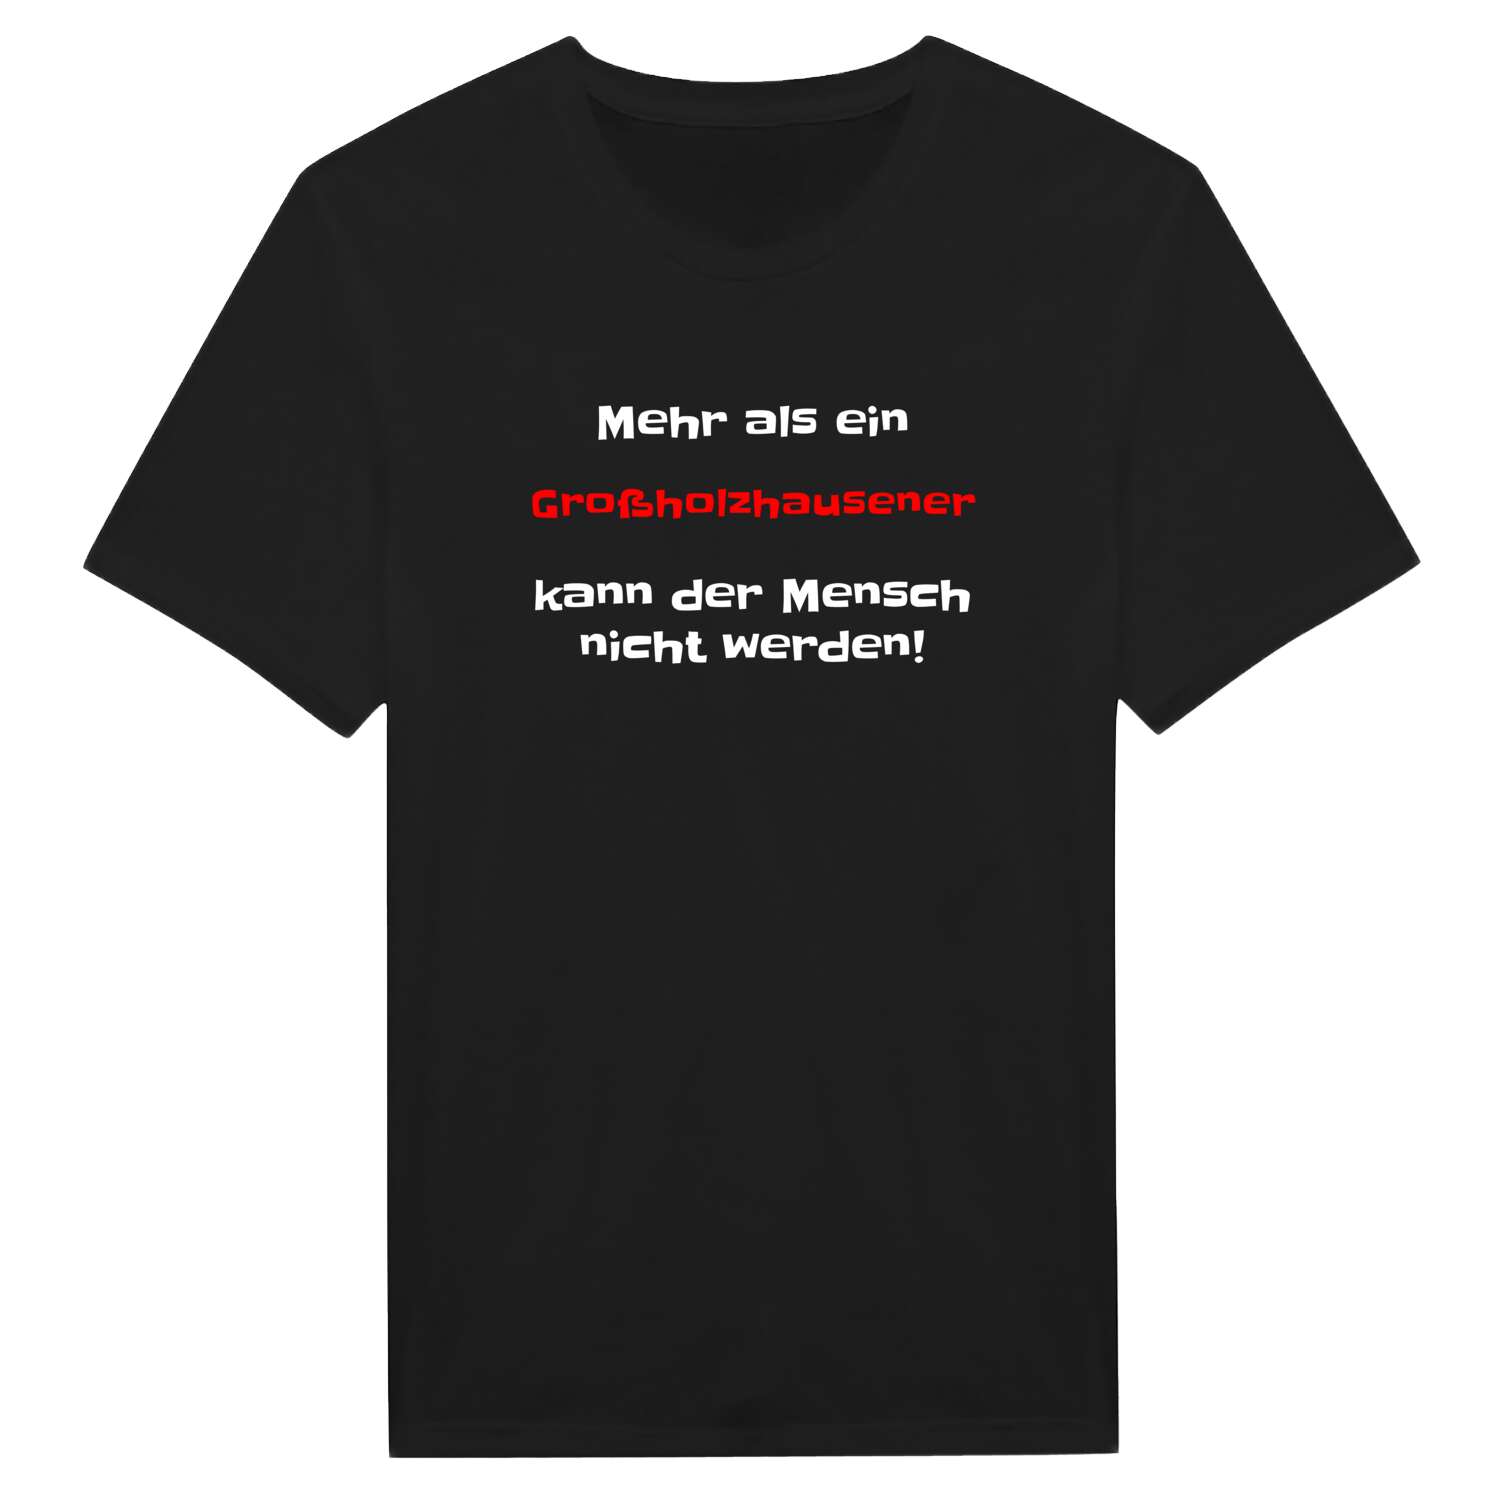 Großholzhausen T-Shirt »Mehr als ein«